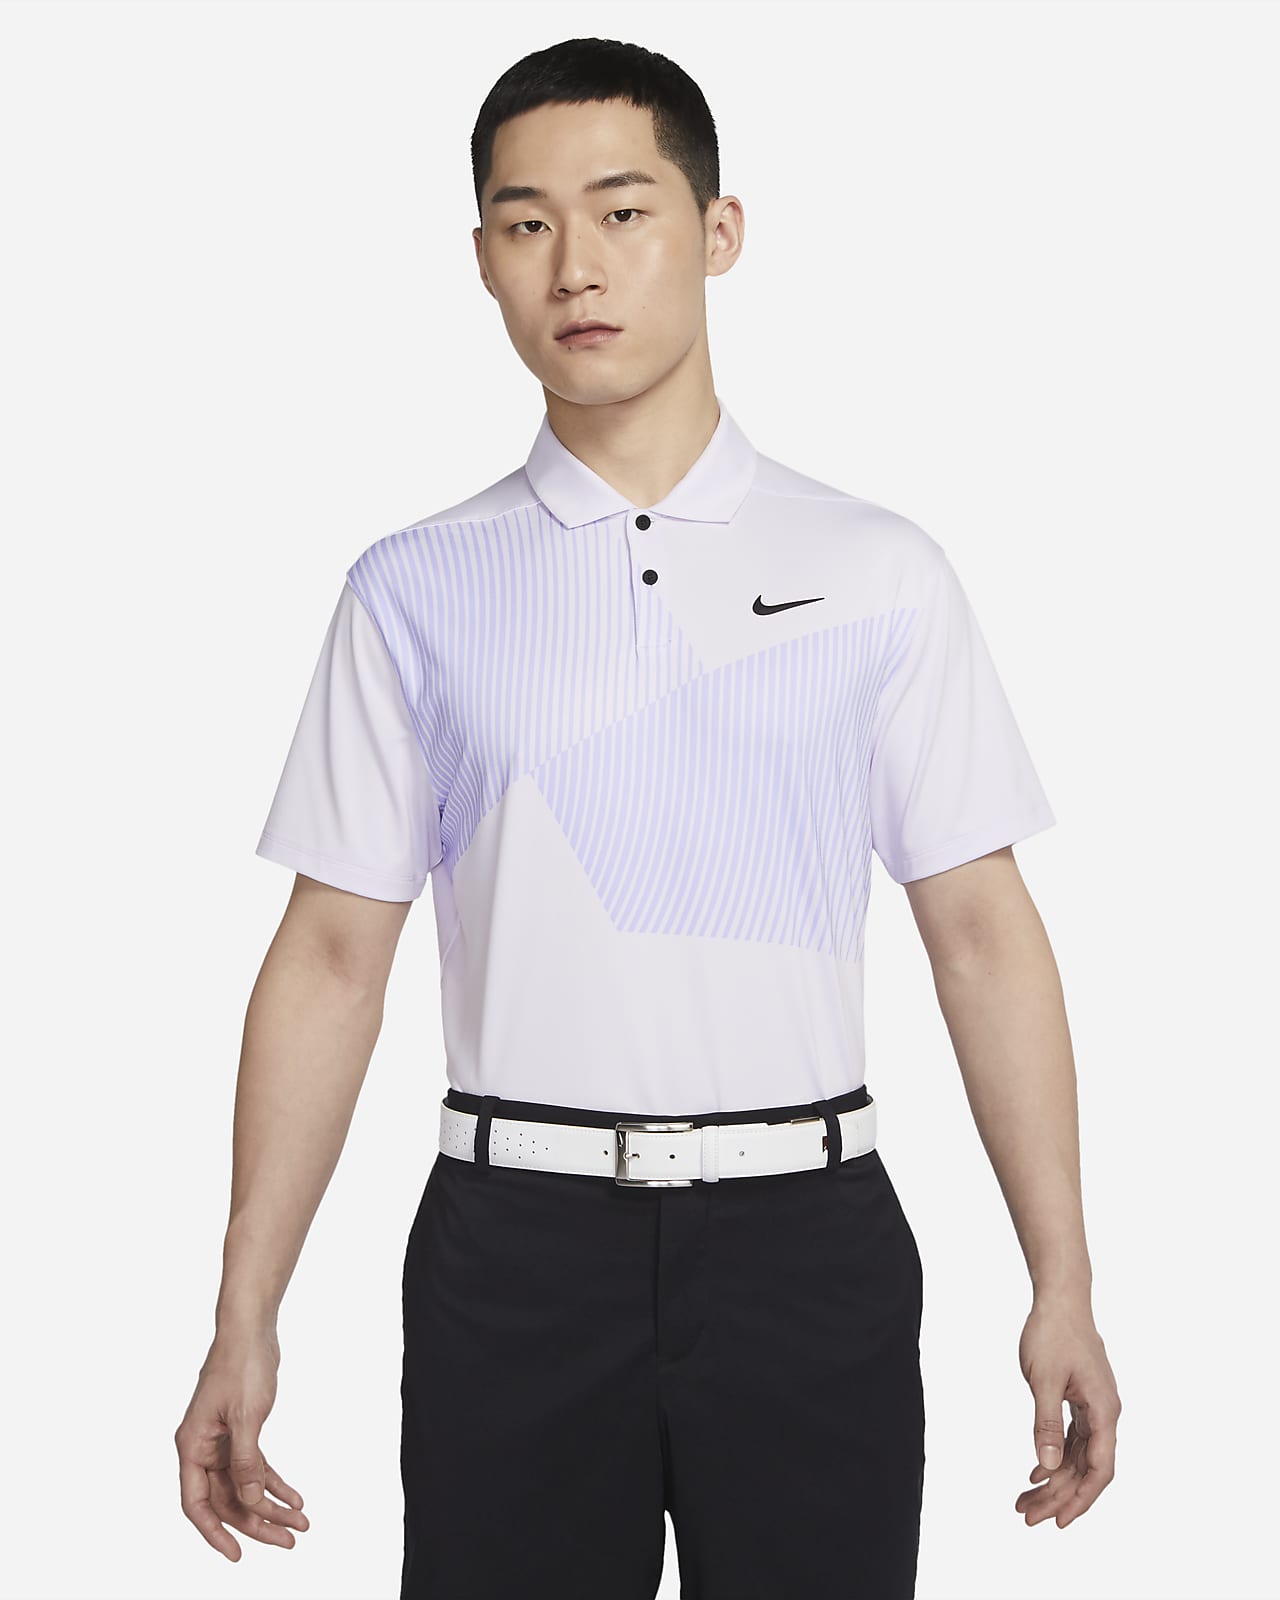 เสื้อโปโลกอล์ฟพิมพ์ลายผู้ชาย Nike Dri-FIT Vapor